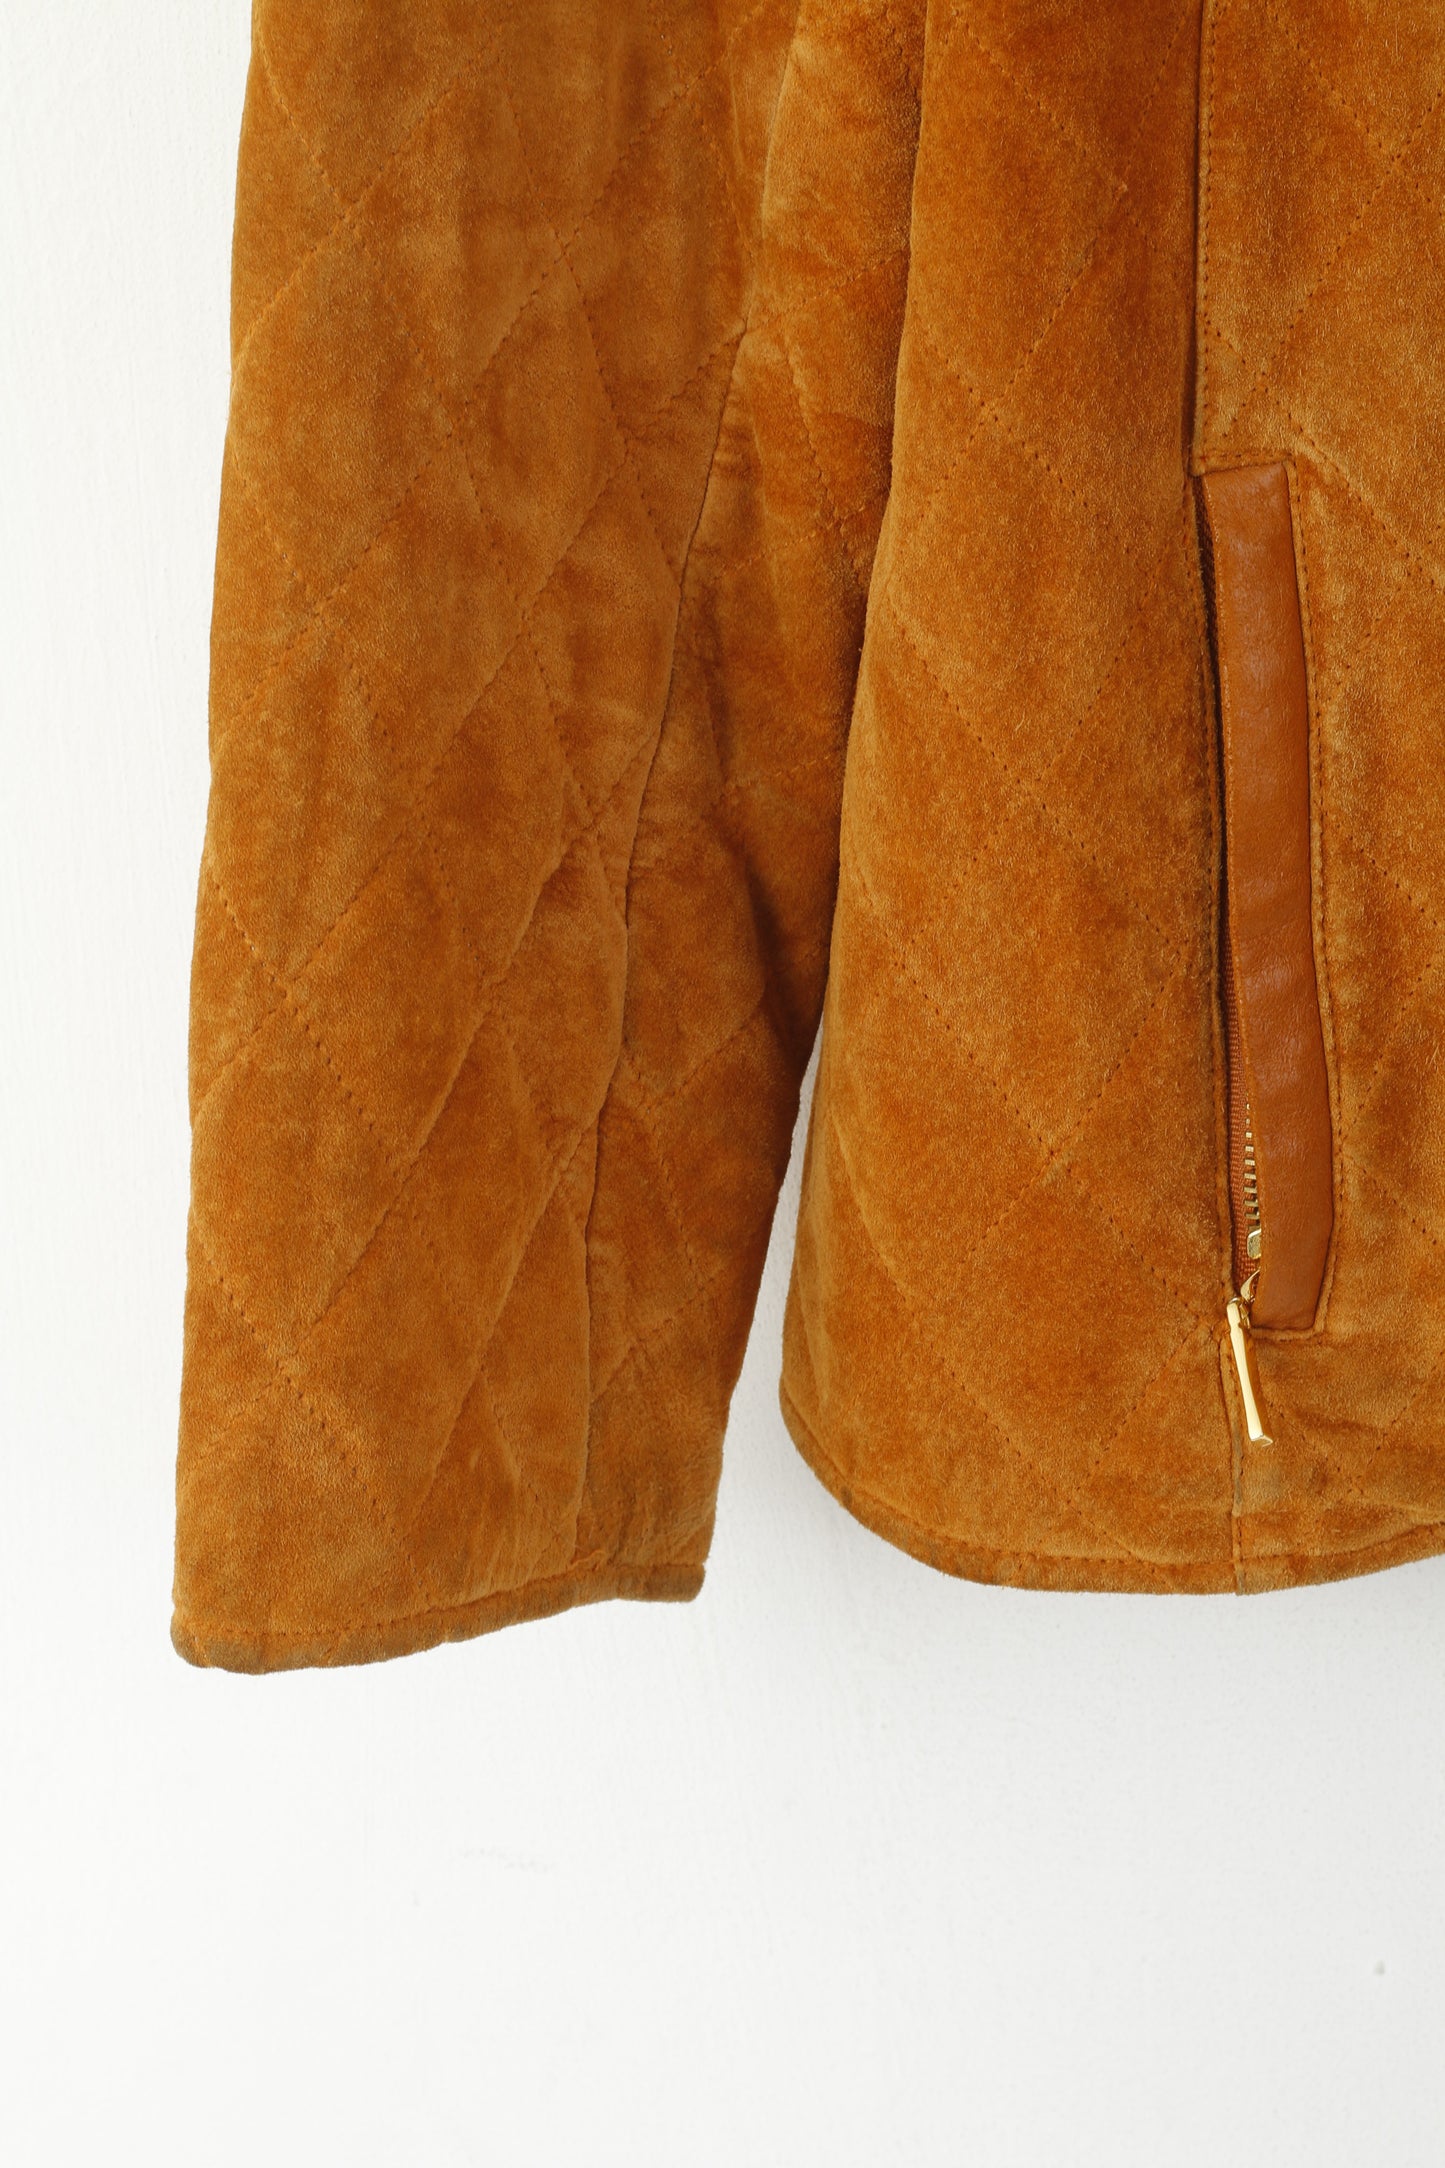 Leather Sound Wopmen 38 M Jacket Camel Pig Suede Vintage Full Zip Shoulder Pads Top